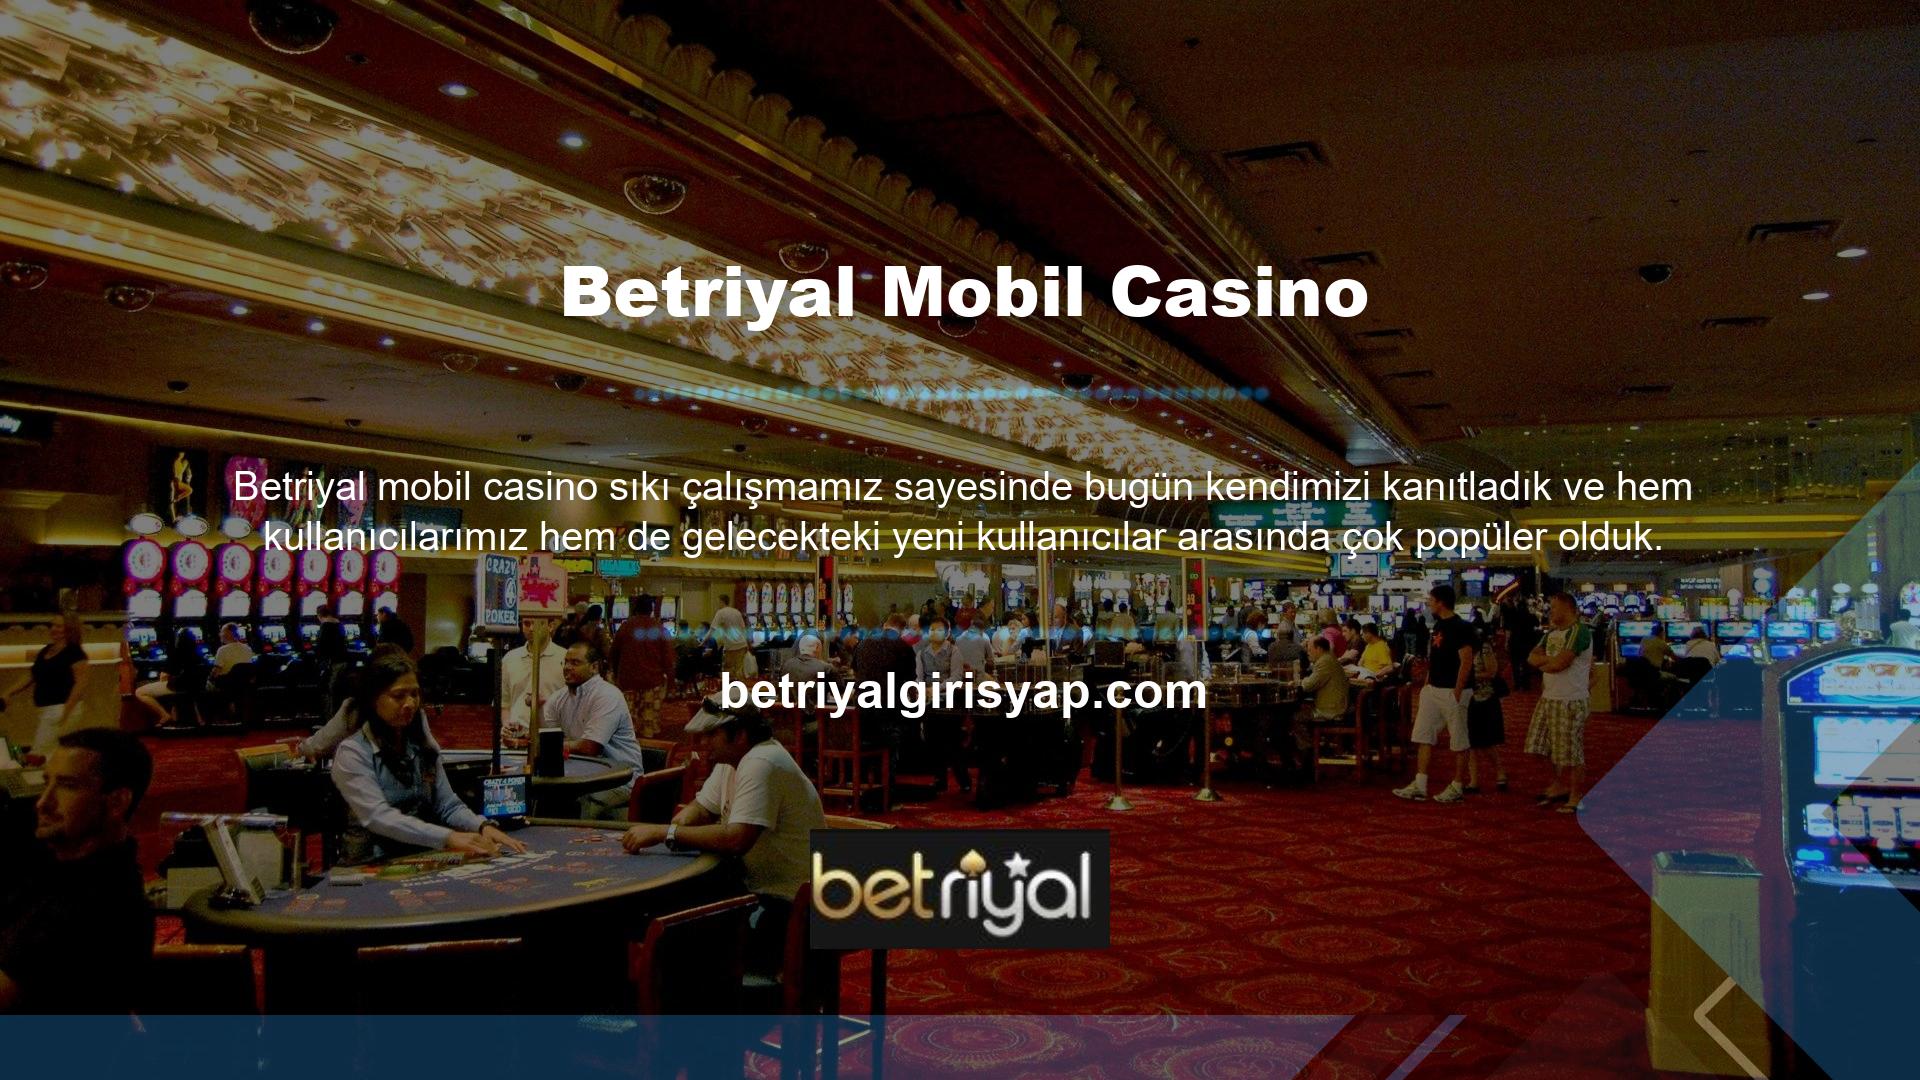 İş kuralları şunlardır: Sadece Betriyal Whatsapp mobil casino müşterileriyle çalışmak bizi ve kullanıcılarımızı mutlu eden kuraldır